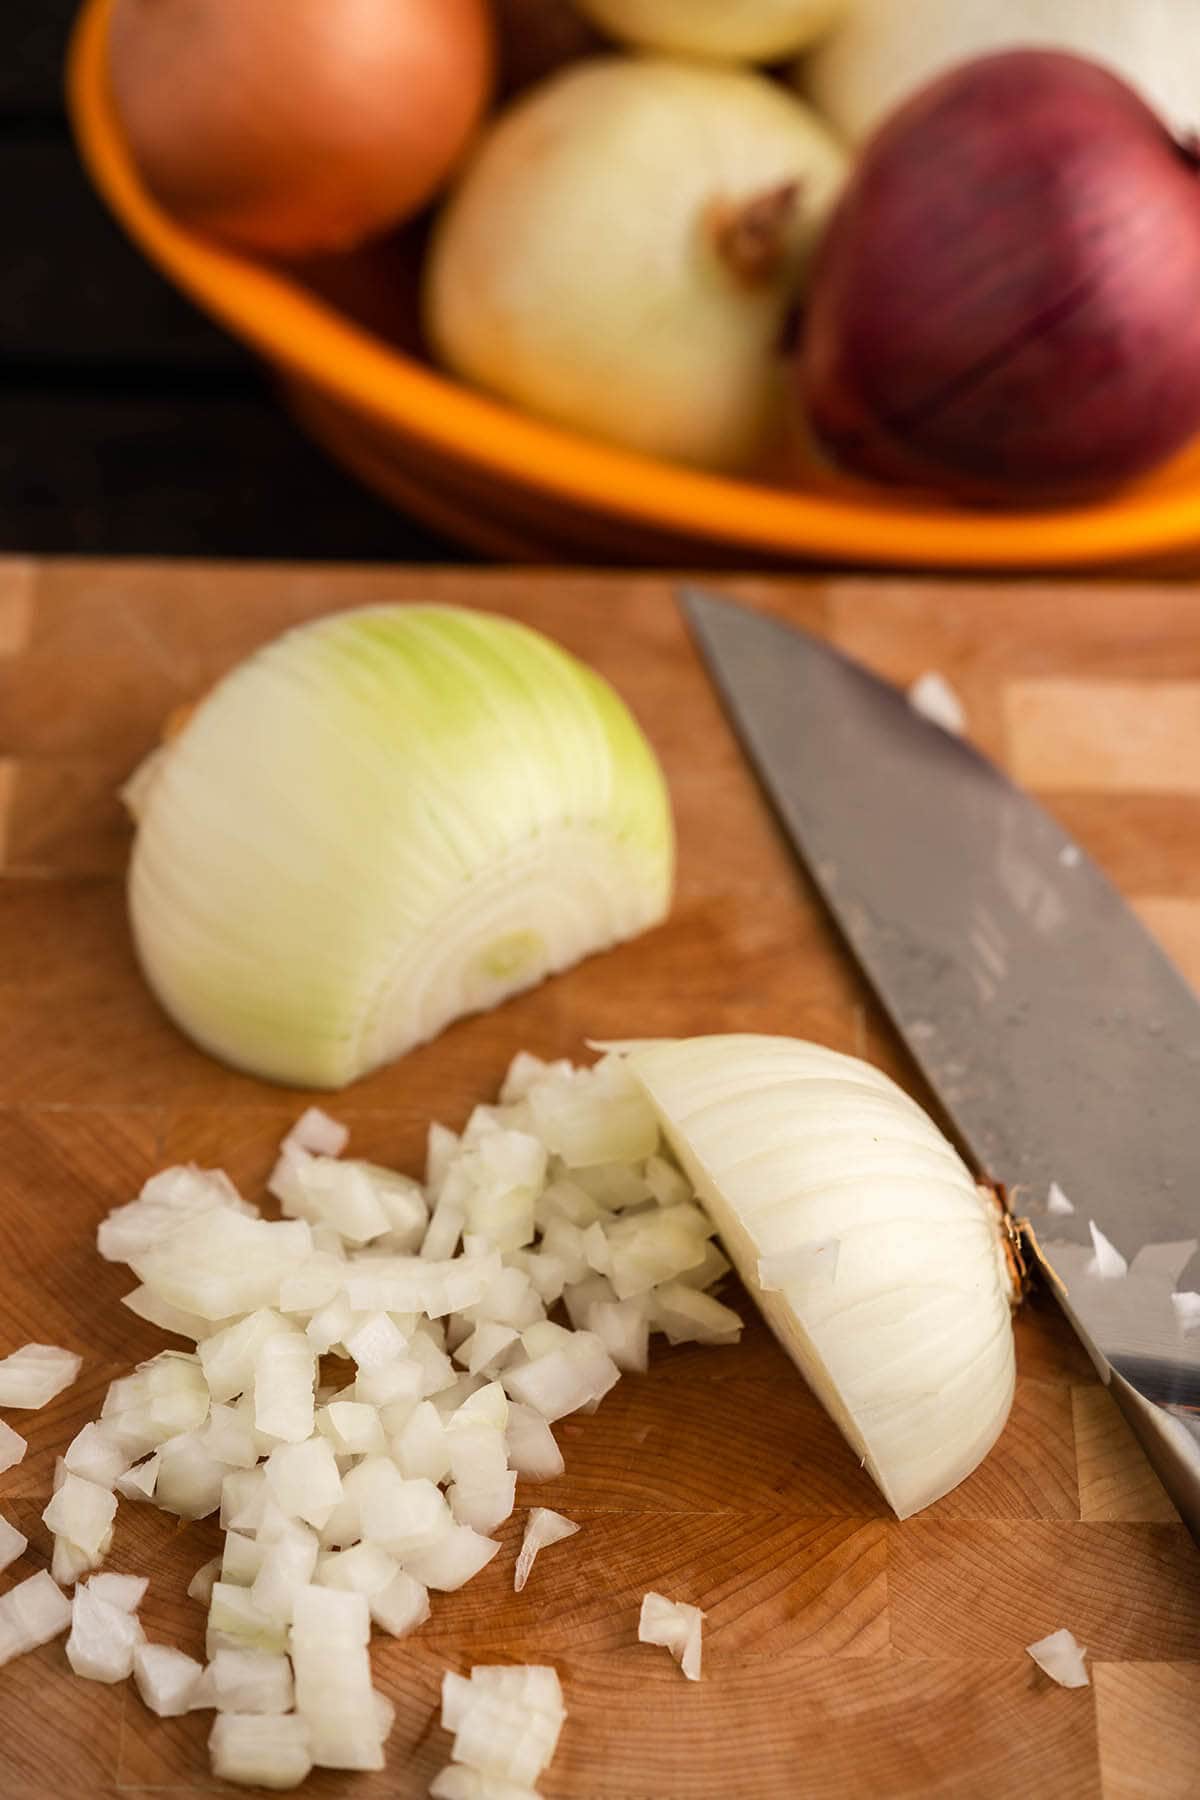 Diced onion on cutting board.